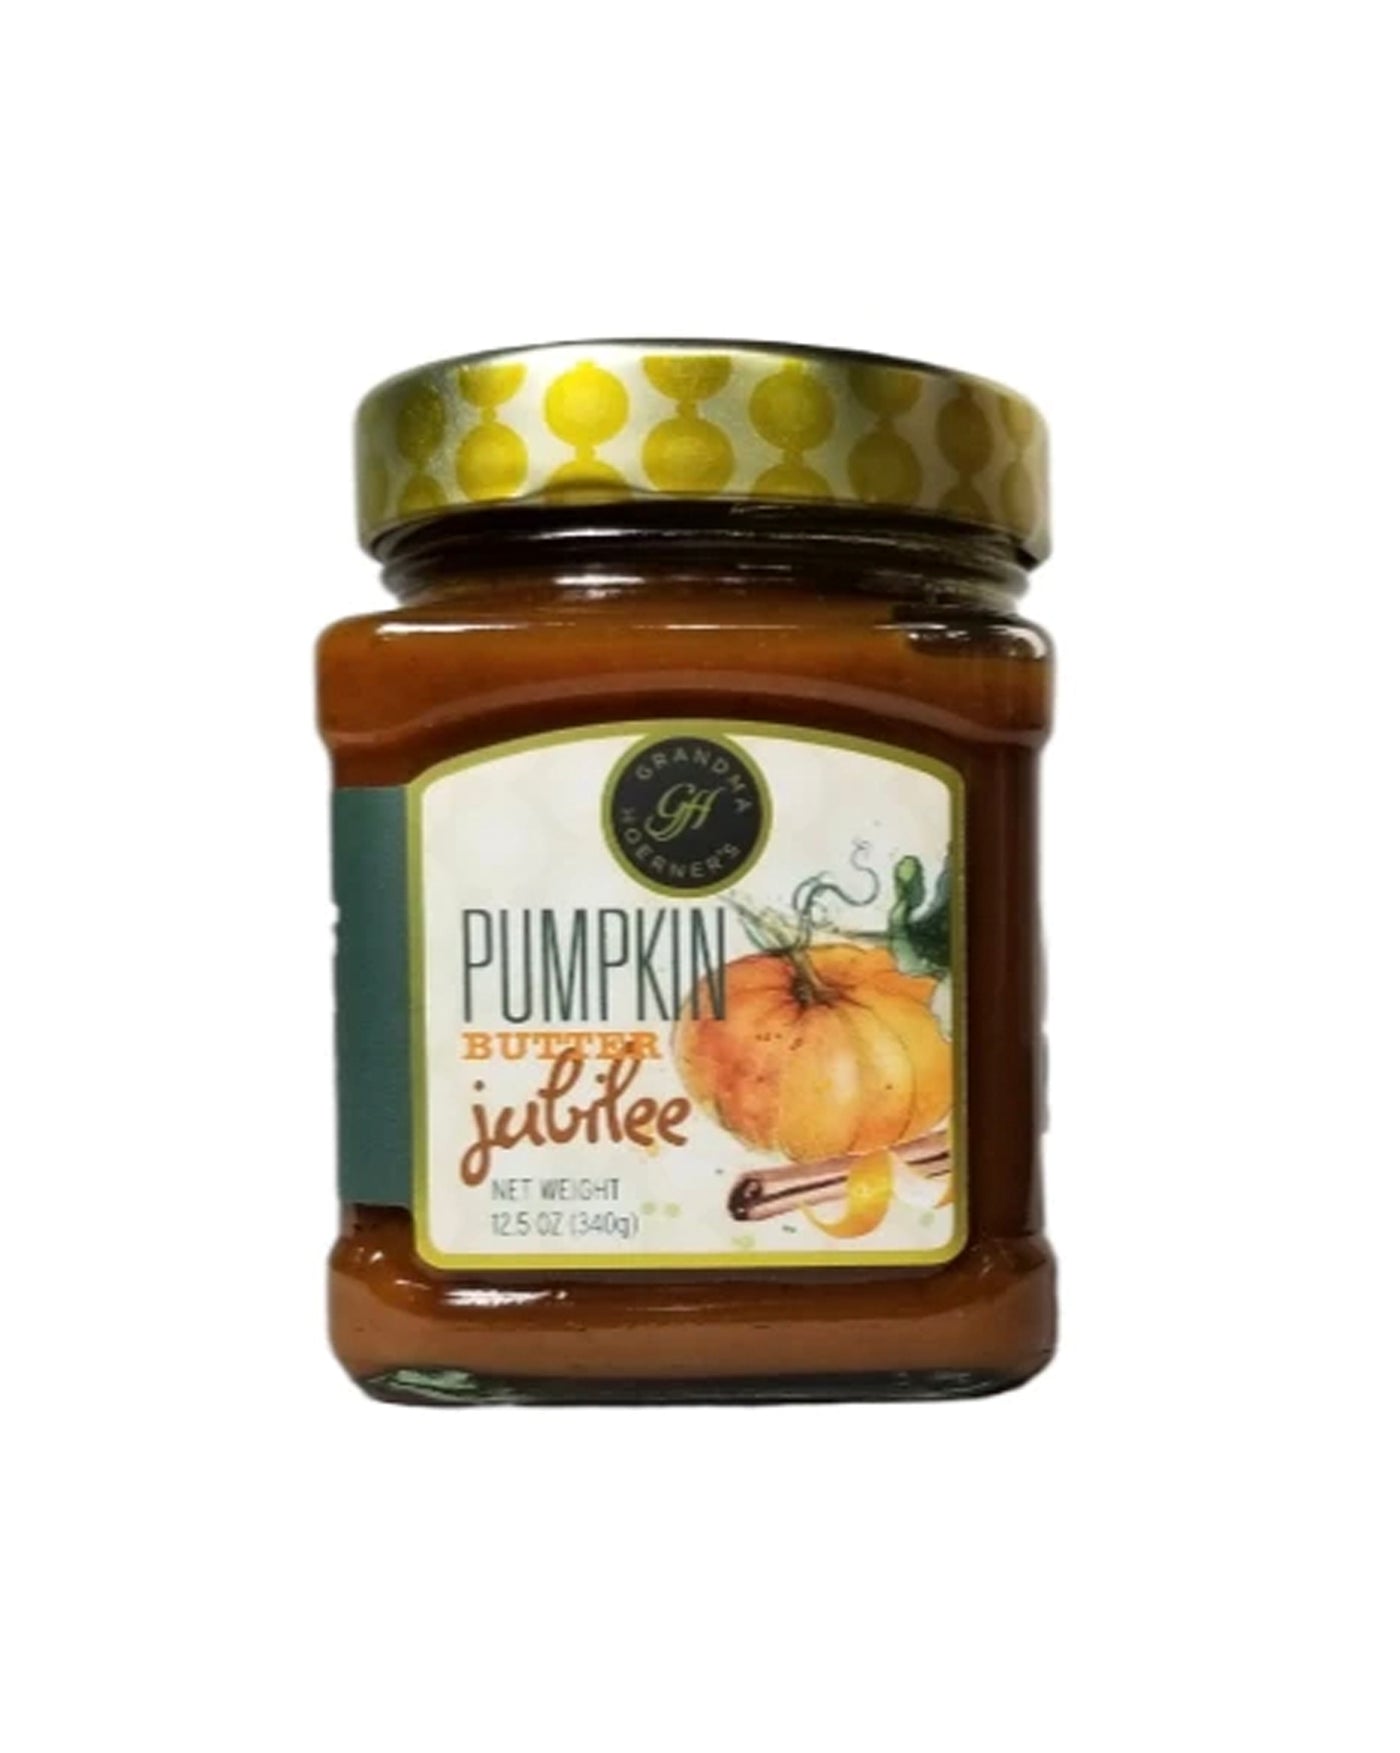 GH - Pumpkin Butter Jubilee